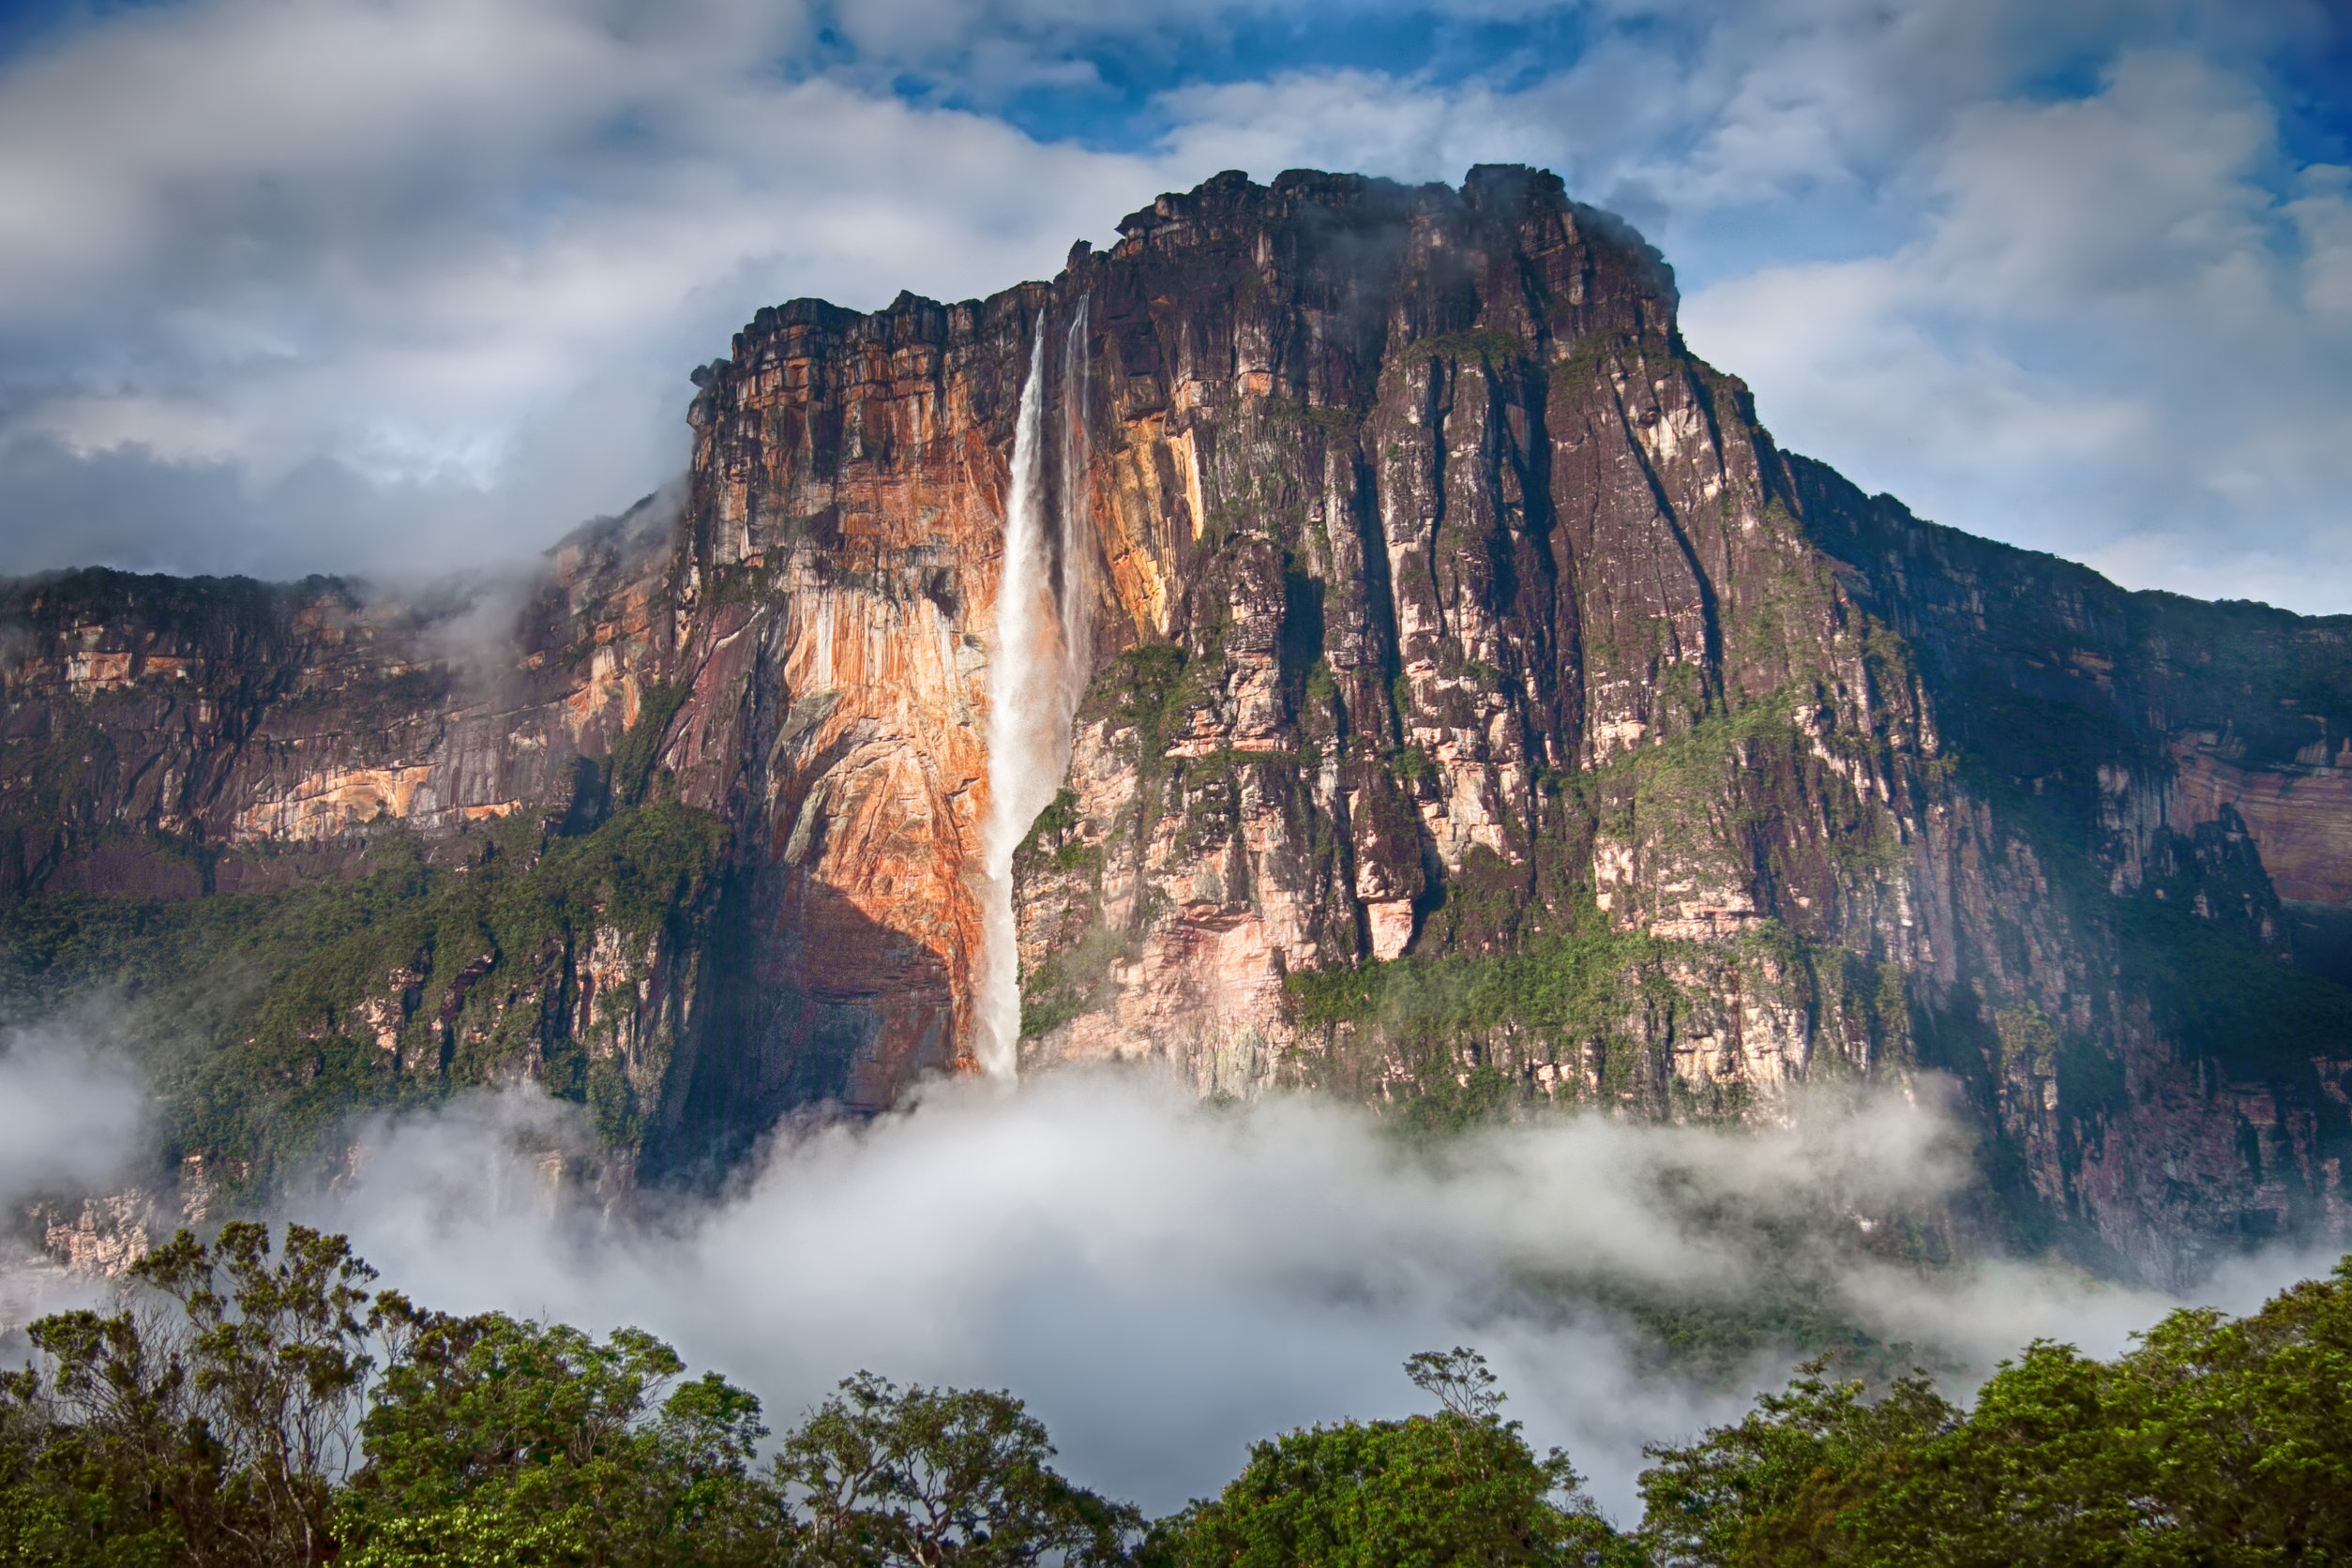 Country falls. Южная Америка водопад Анхель. Водопад Анхель Венесуэла. Водопад Анхель самый высокий водопад в мире. Ориноко водопад Анхель.